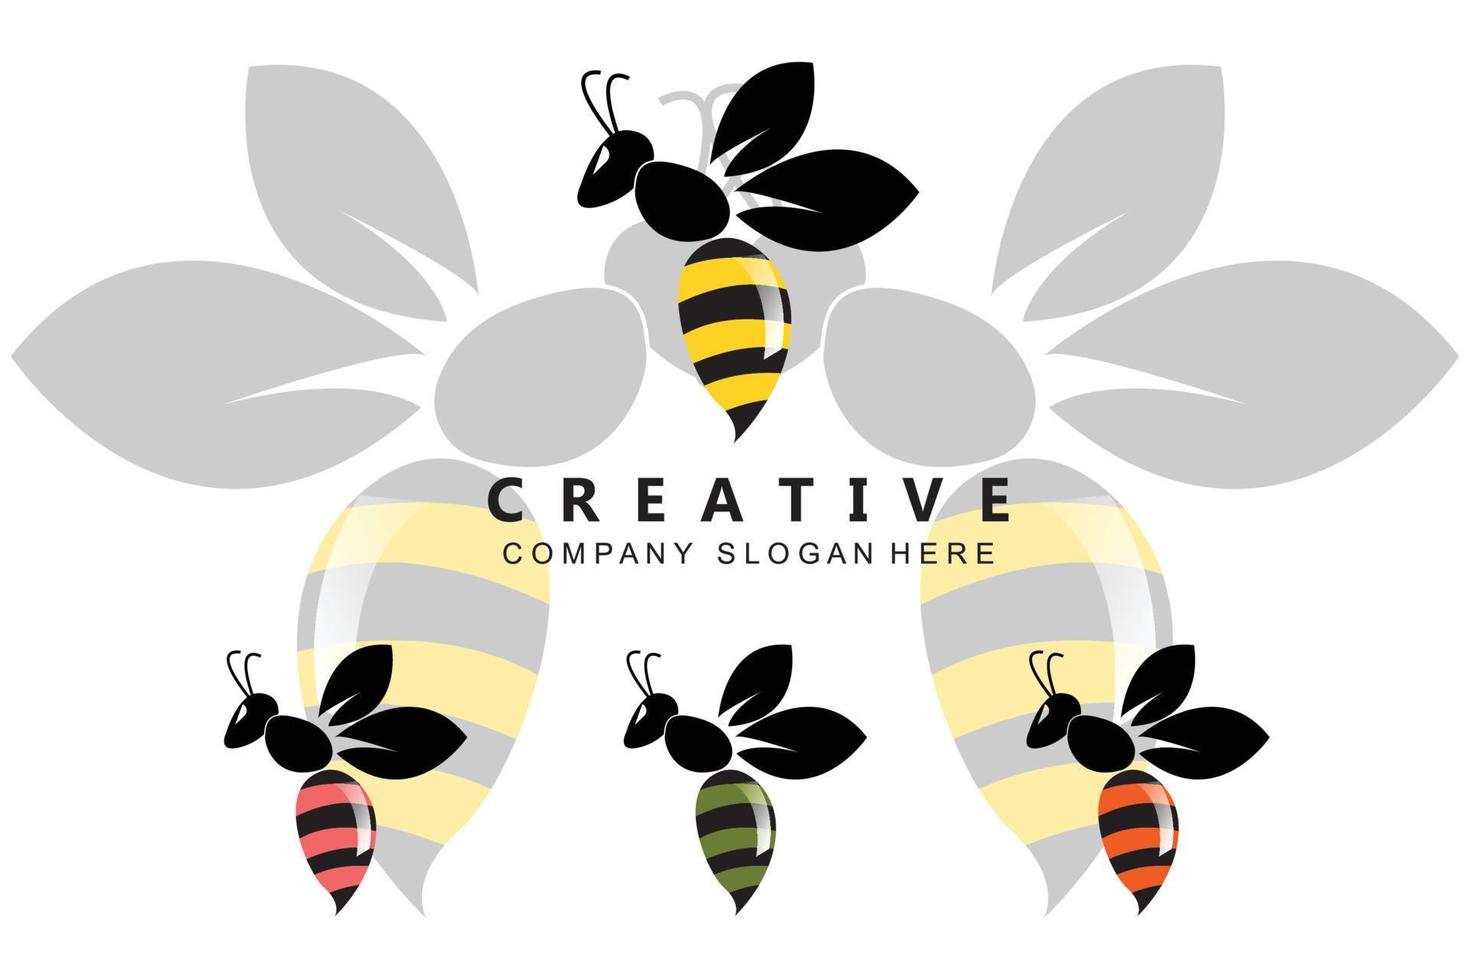 semplice giallo miele ape icona gratis logo vettoriale